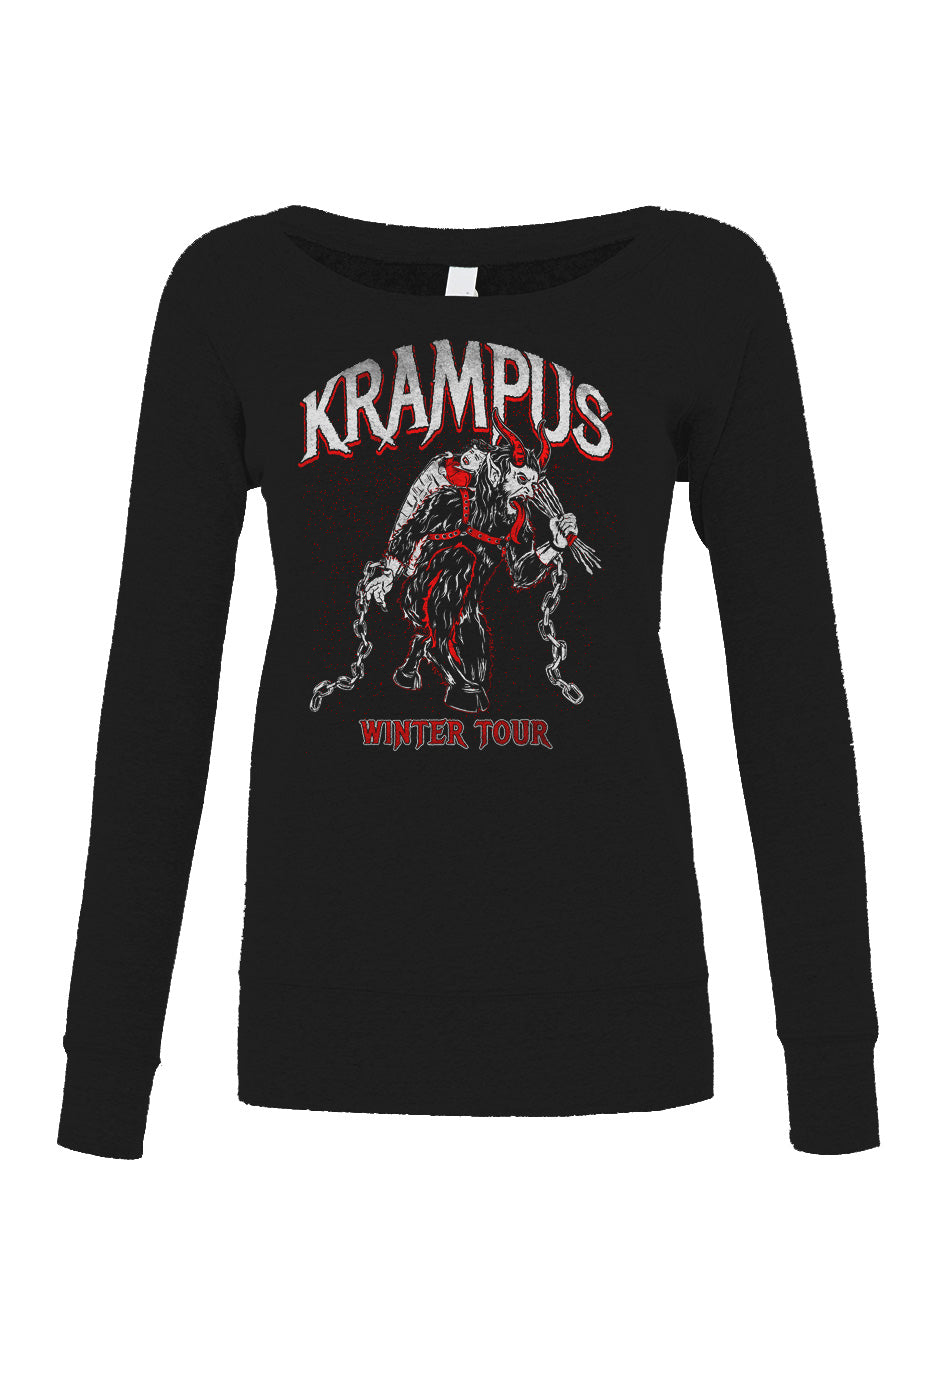 Women's Krampus Winter Tour Scoop Neck Fleece